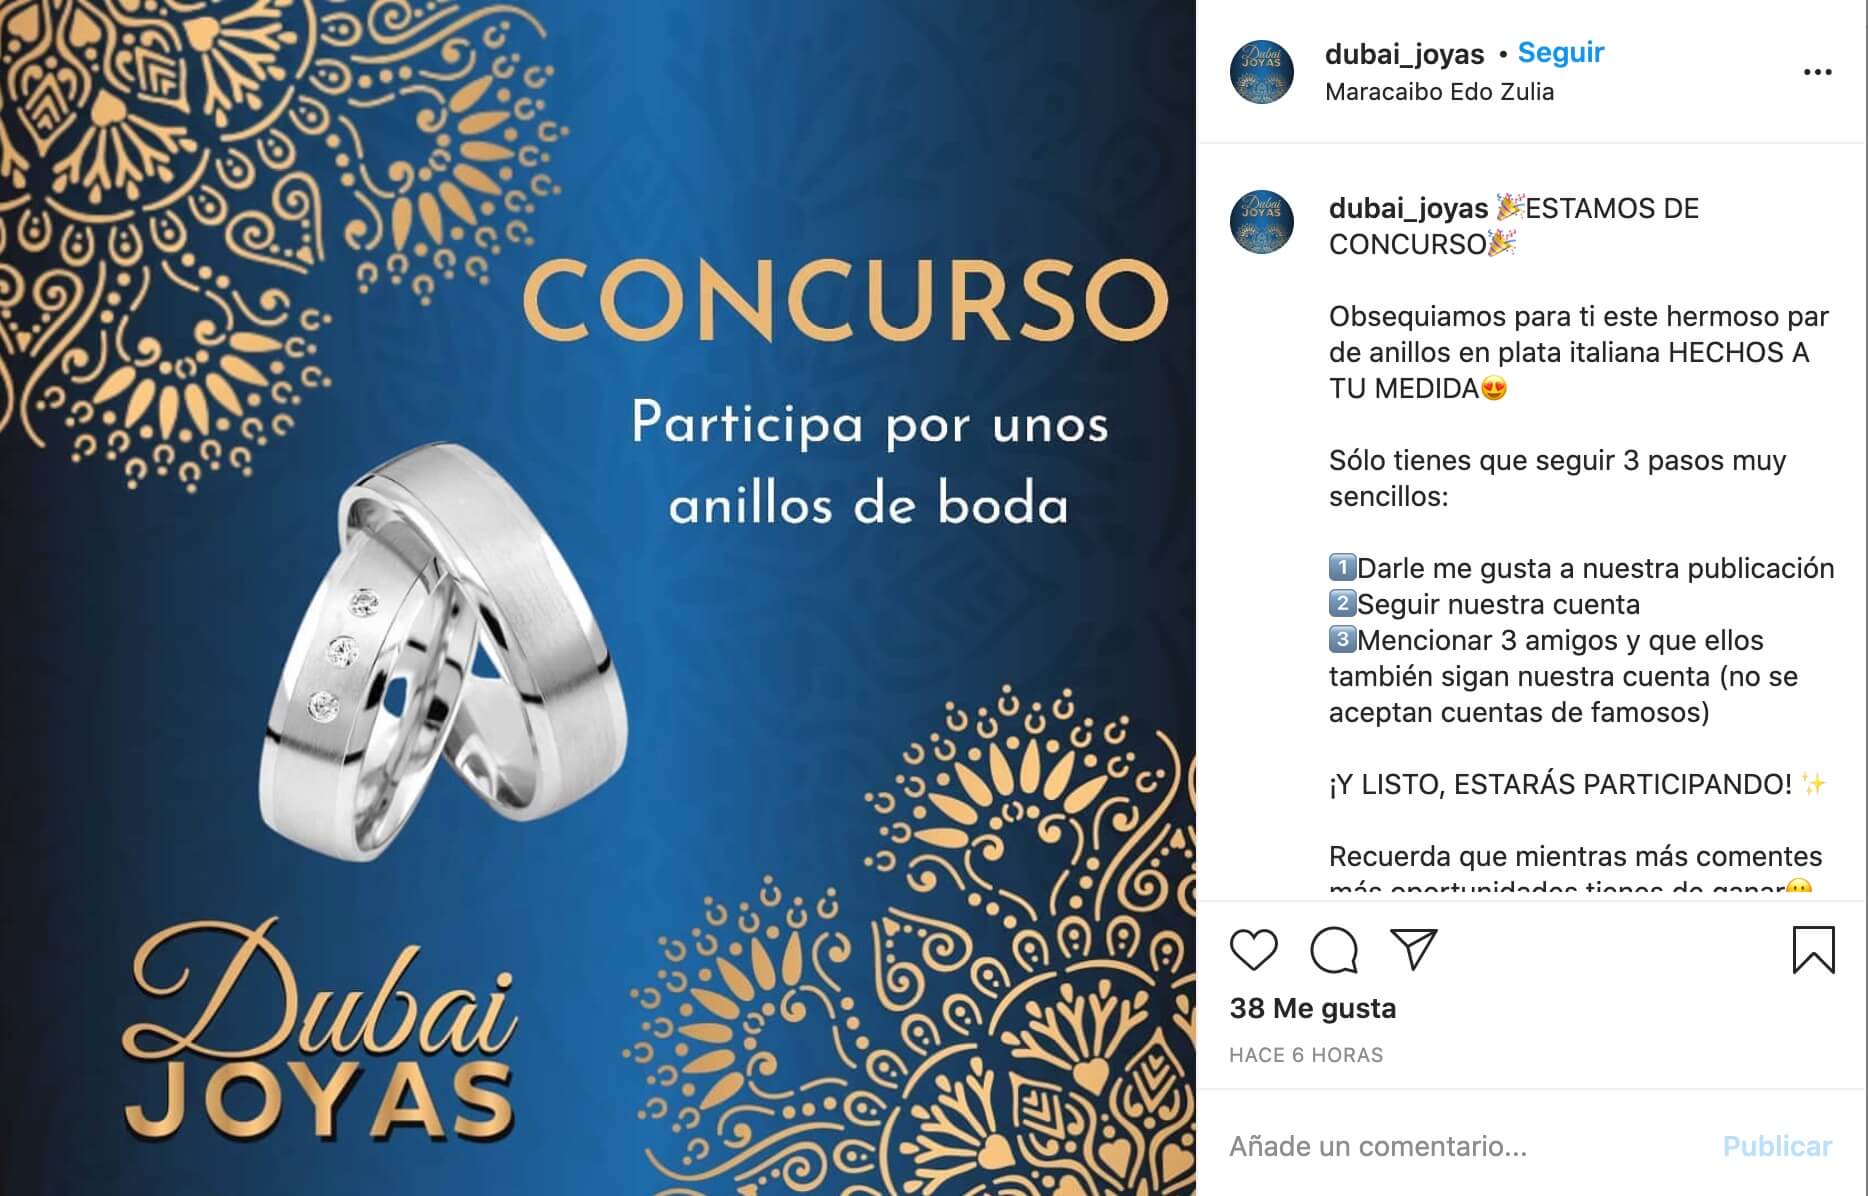 Publicación promocional de concurso de Dubai Joyas en Instagram